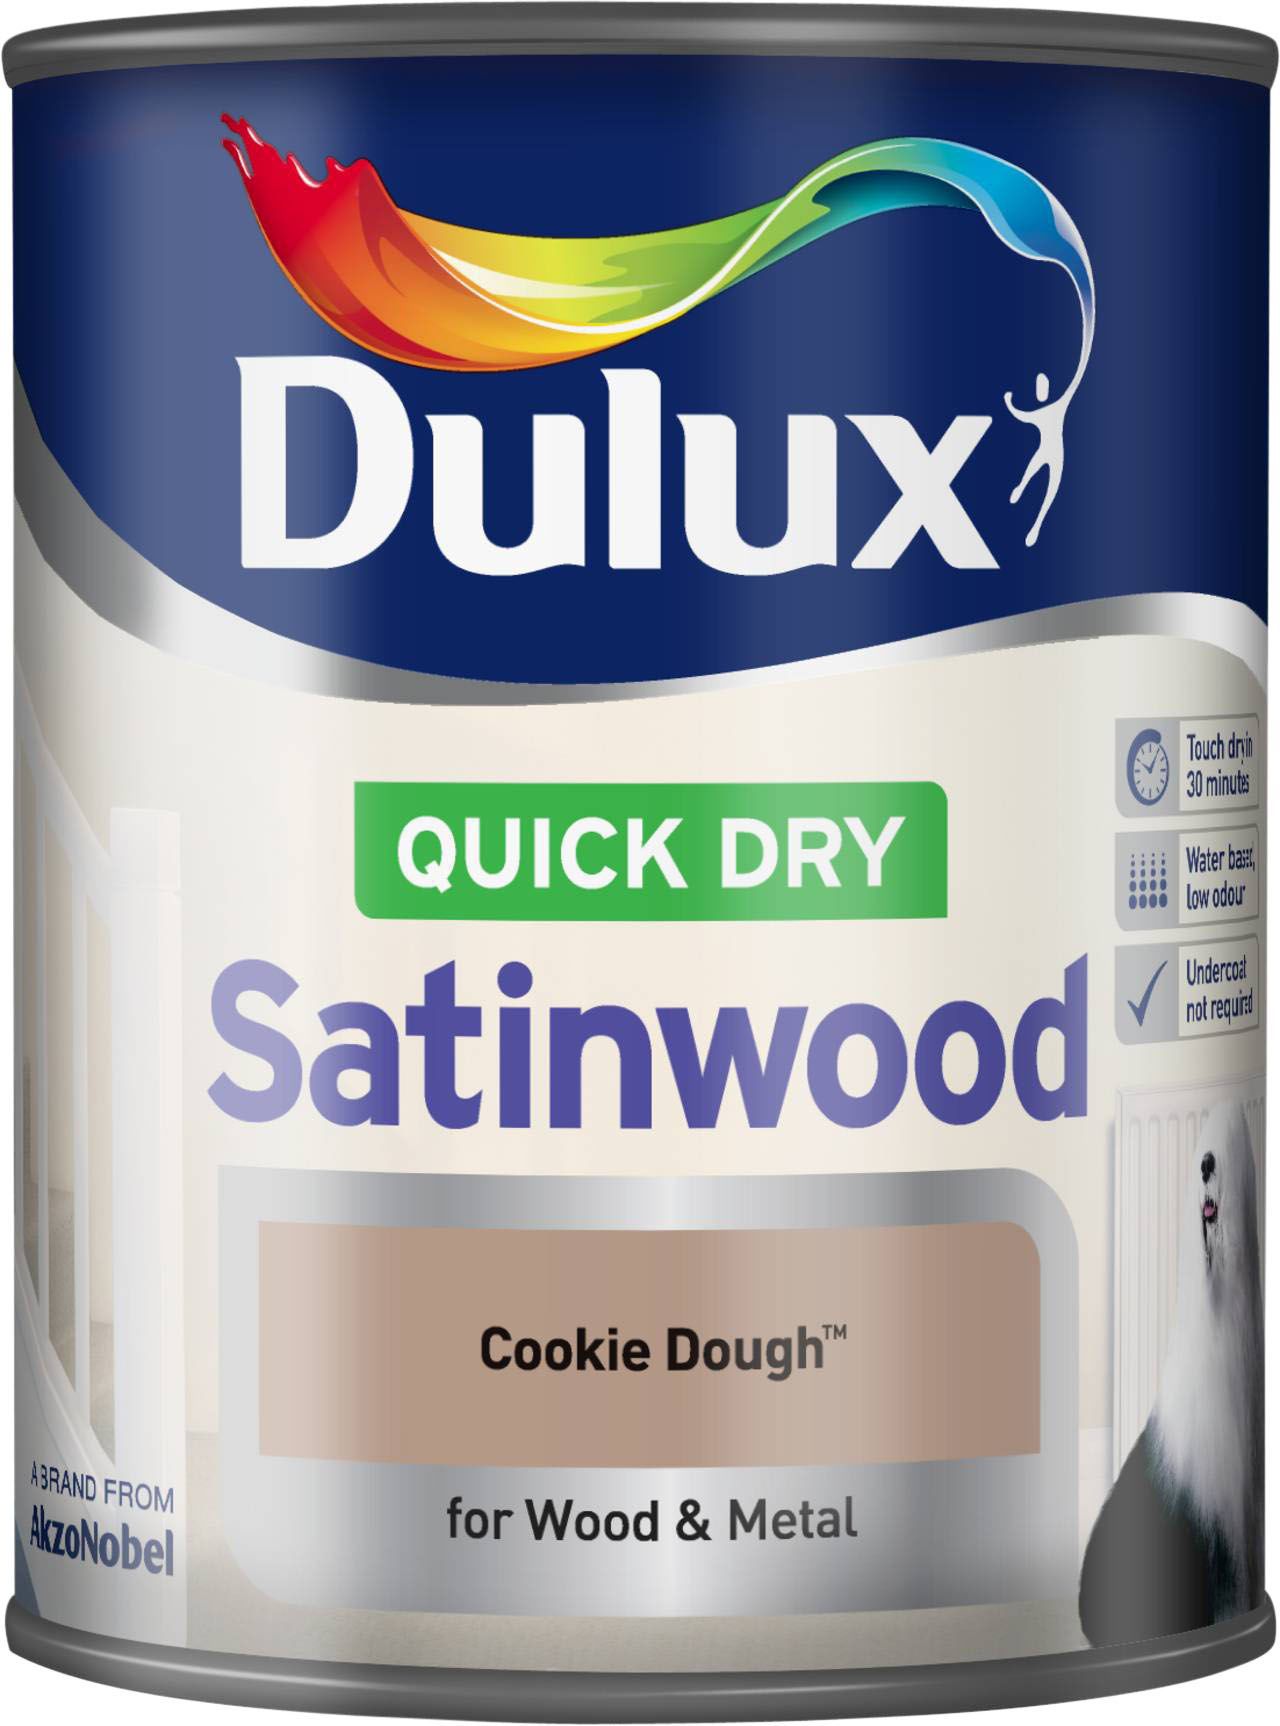 Dulux Cookie dough Satinwood Metal & wood paint, 750ml